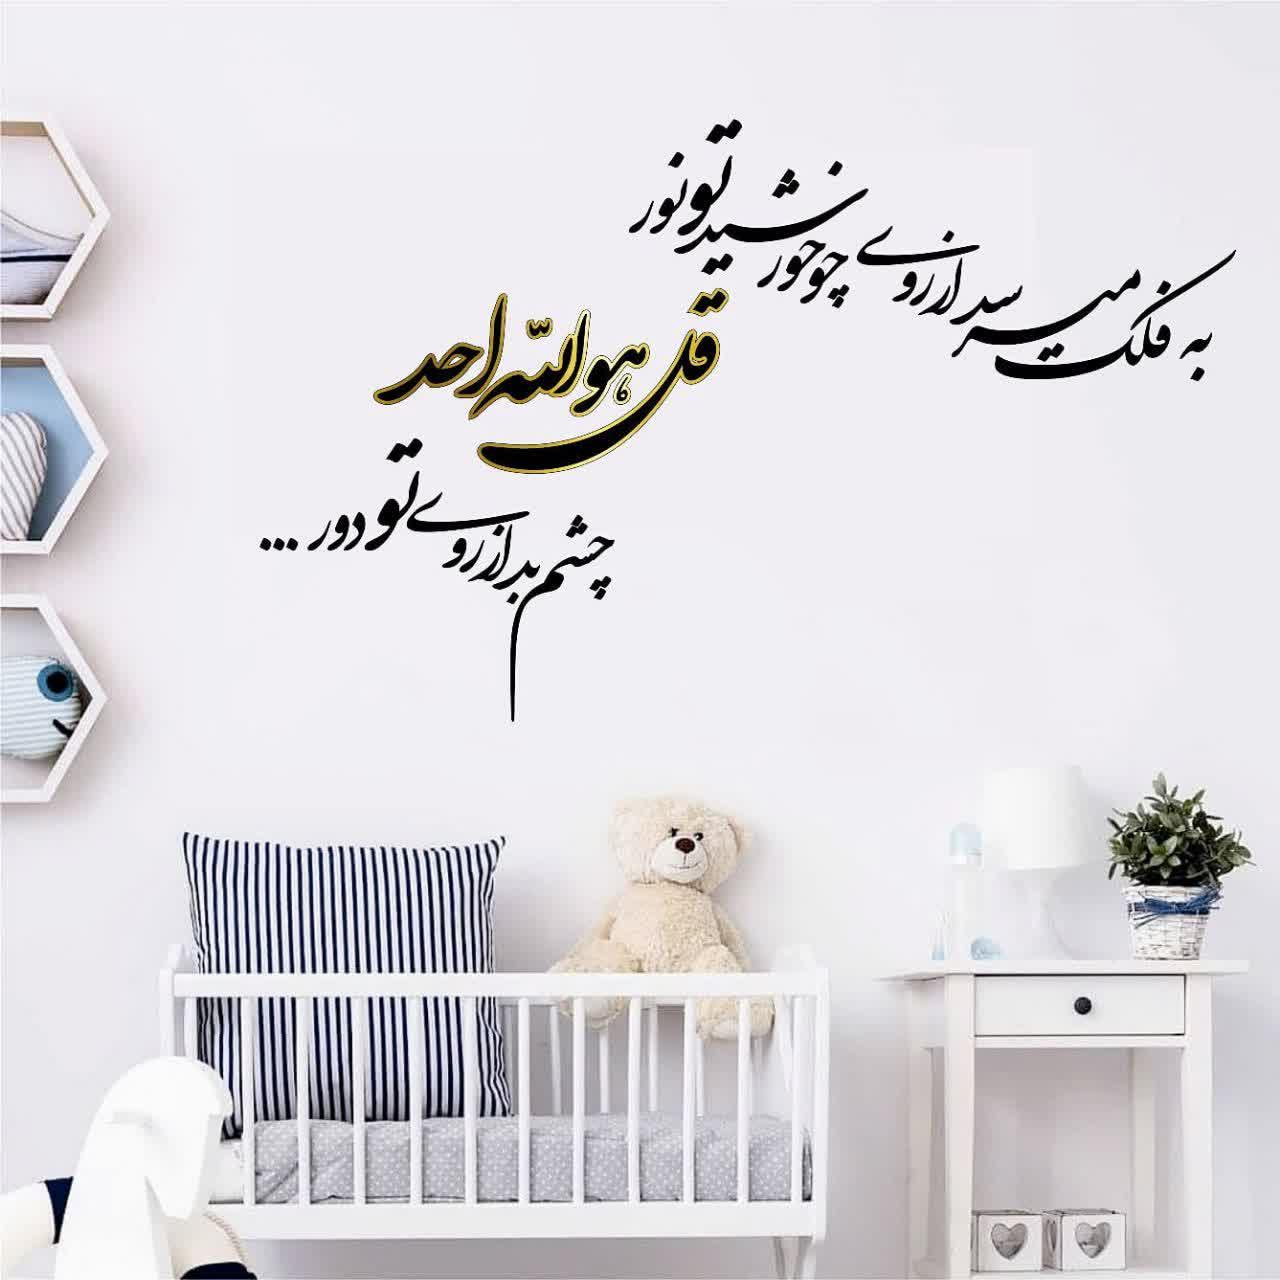 تابلو دیواری برای اتاق نوزاد ،متن زیبای شعر برای نوزاد ،دکور شیک جشن سیسمونی